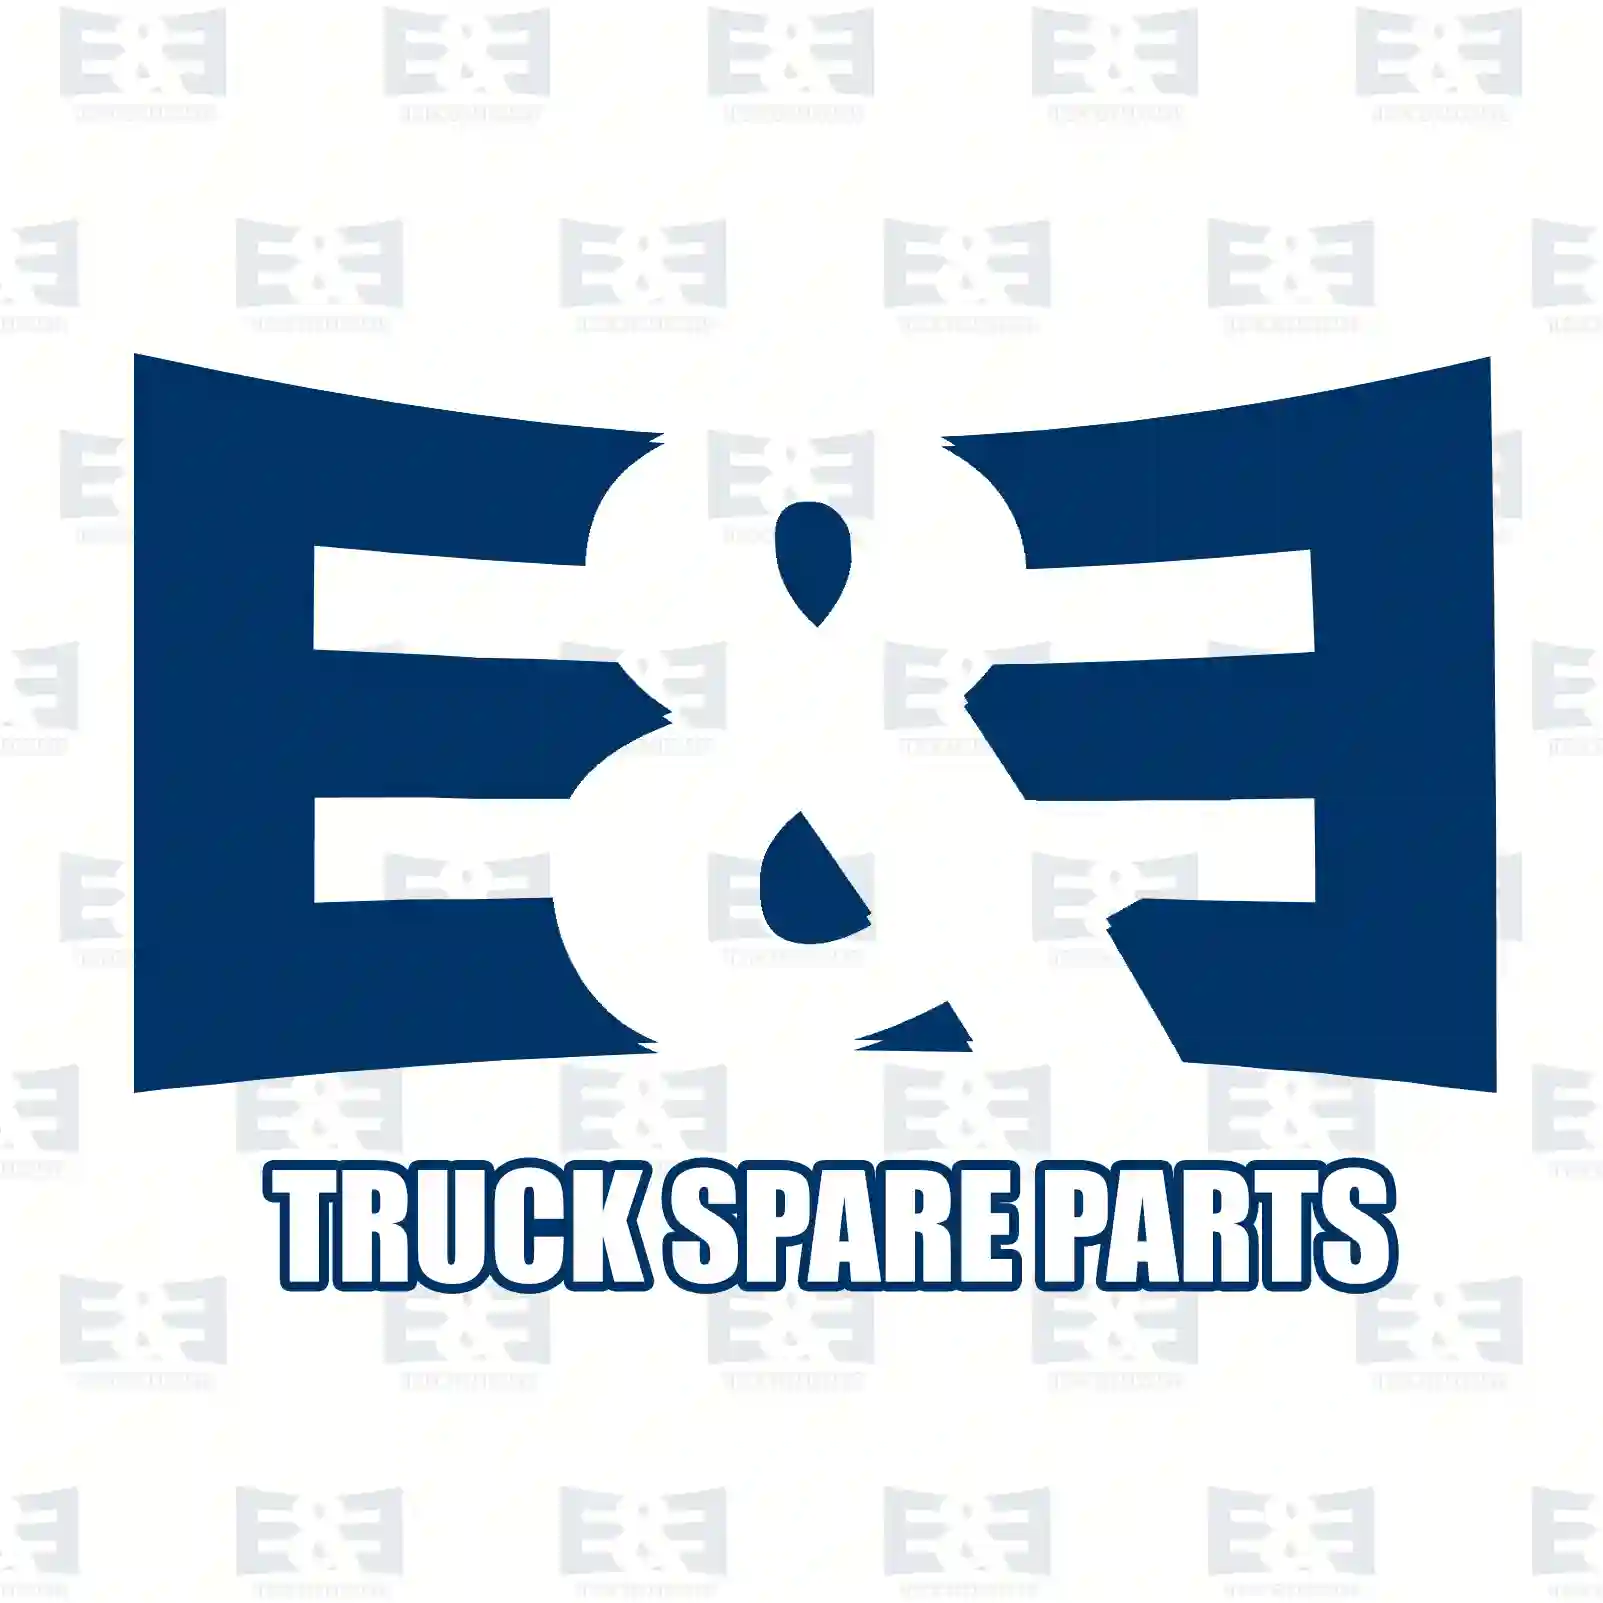 Screw, 2E2285980, 06012835118, 000931008047, 304017008018, , ||  2E2285980 E&E Truck Spare Parts | Truck Spare Parts, Auotomotive Spare Parts Screw, 2E2285980, 06012835118, 000931008047, 304017008018, , ||  2E2285980 E&E Truck Spare Parts | Truck Spare Parts, Auotomotive Spare Parts